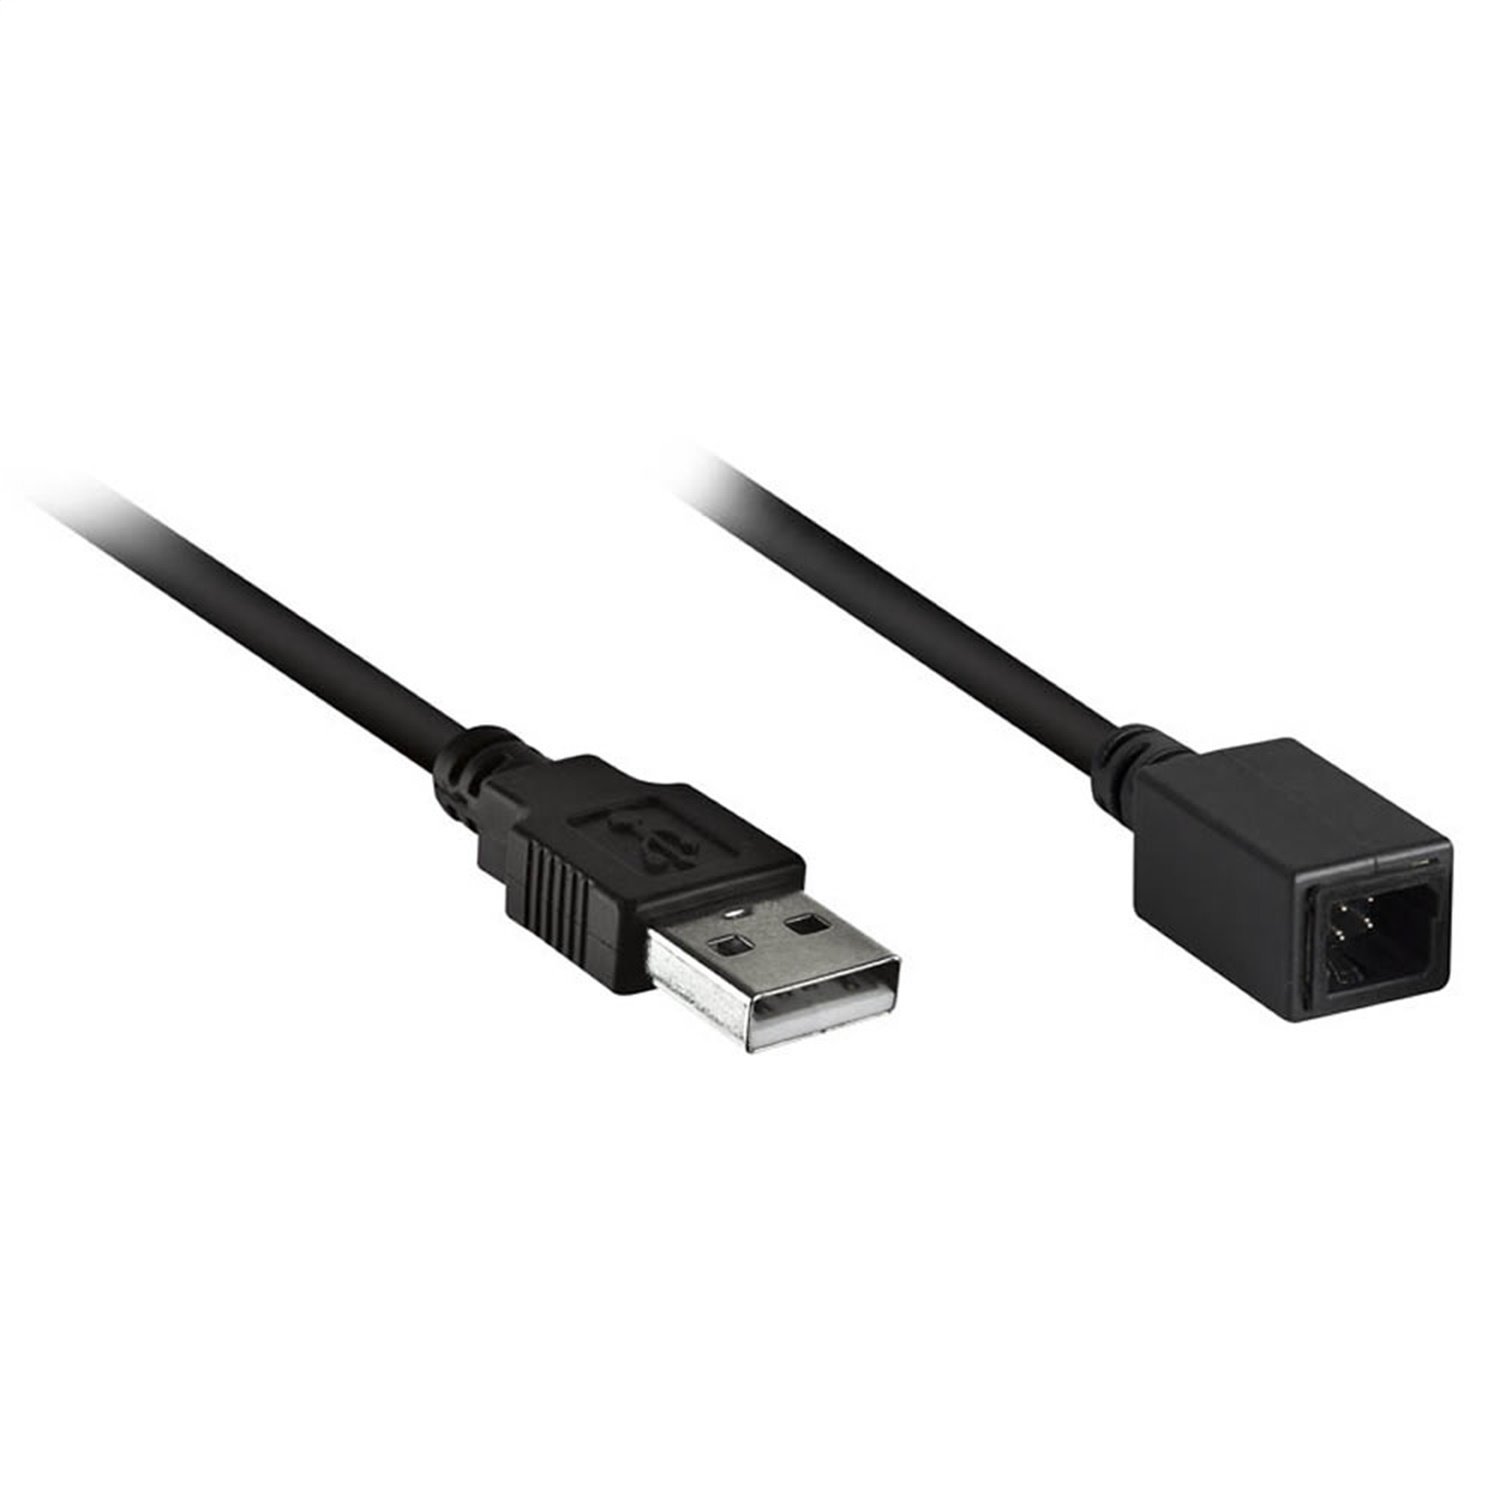 AXUSB-SUB2 USB Adaptor, Black